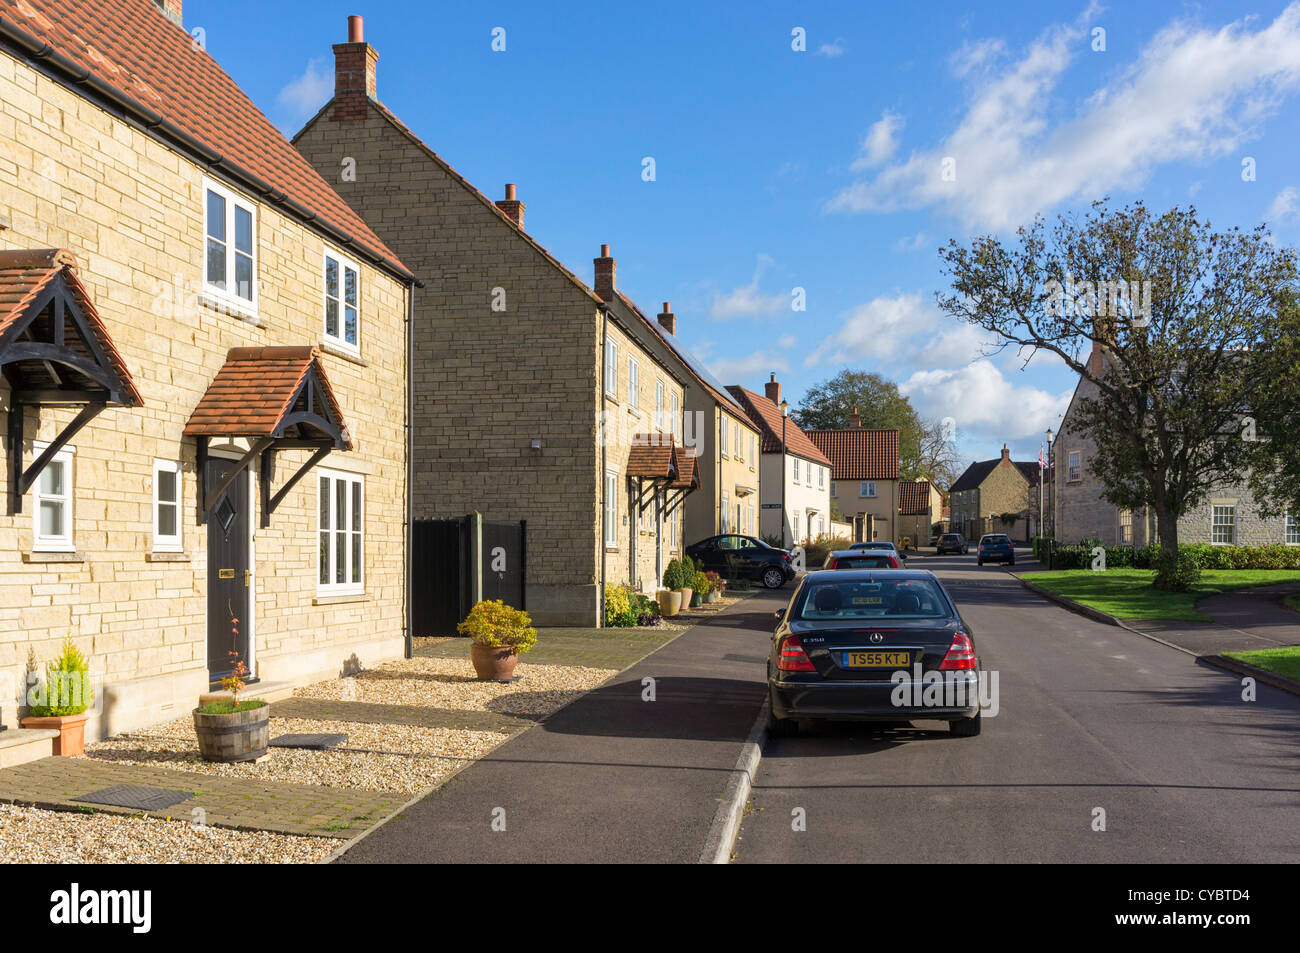 Häuser in einer Straße in einer modernen Wohnanlage, UK Stockfoto